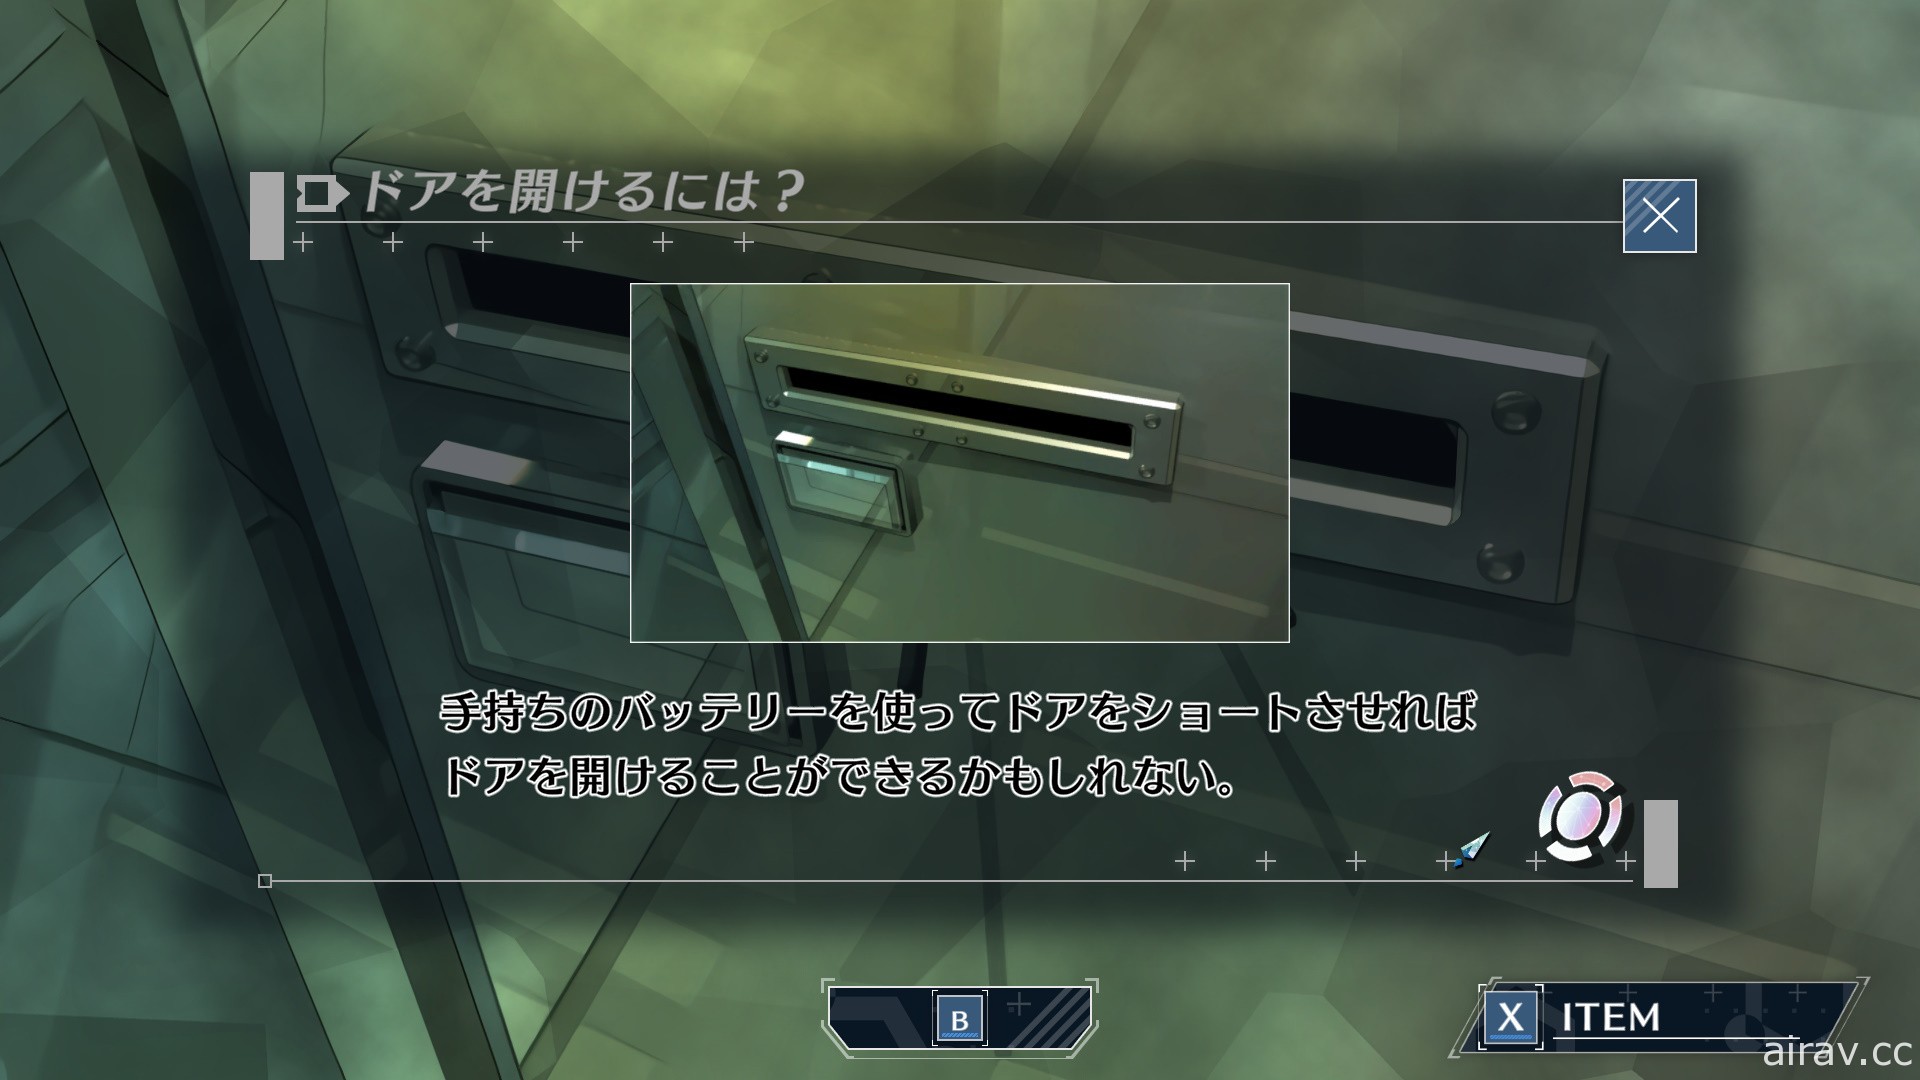 以 PSP 版为基础移植之新作《密室牺牲者》12 月中发售 新增提示功能、画廊模式